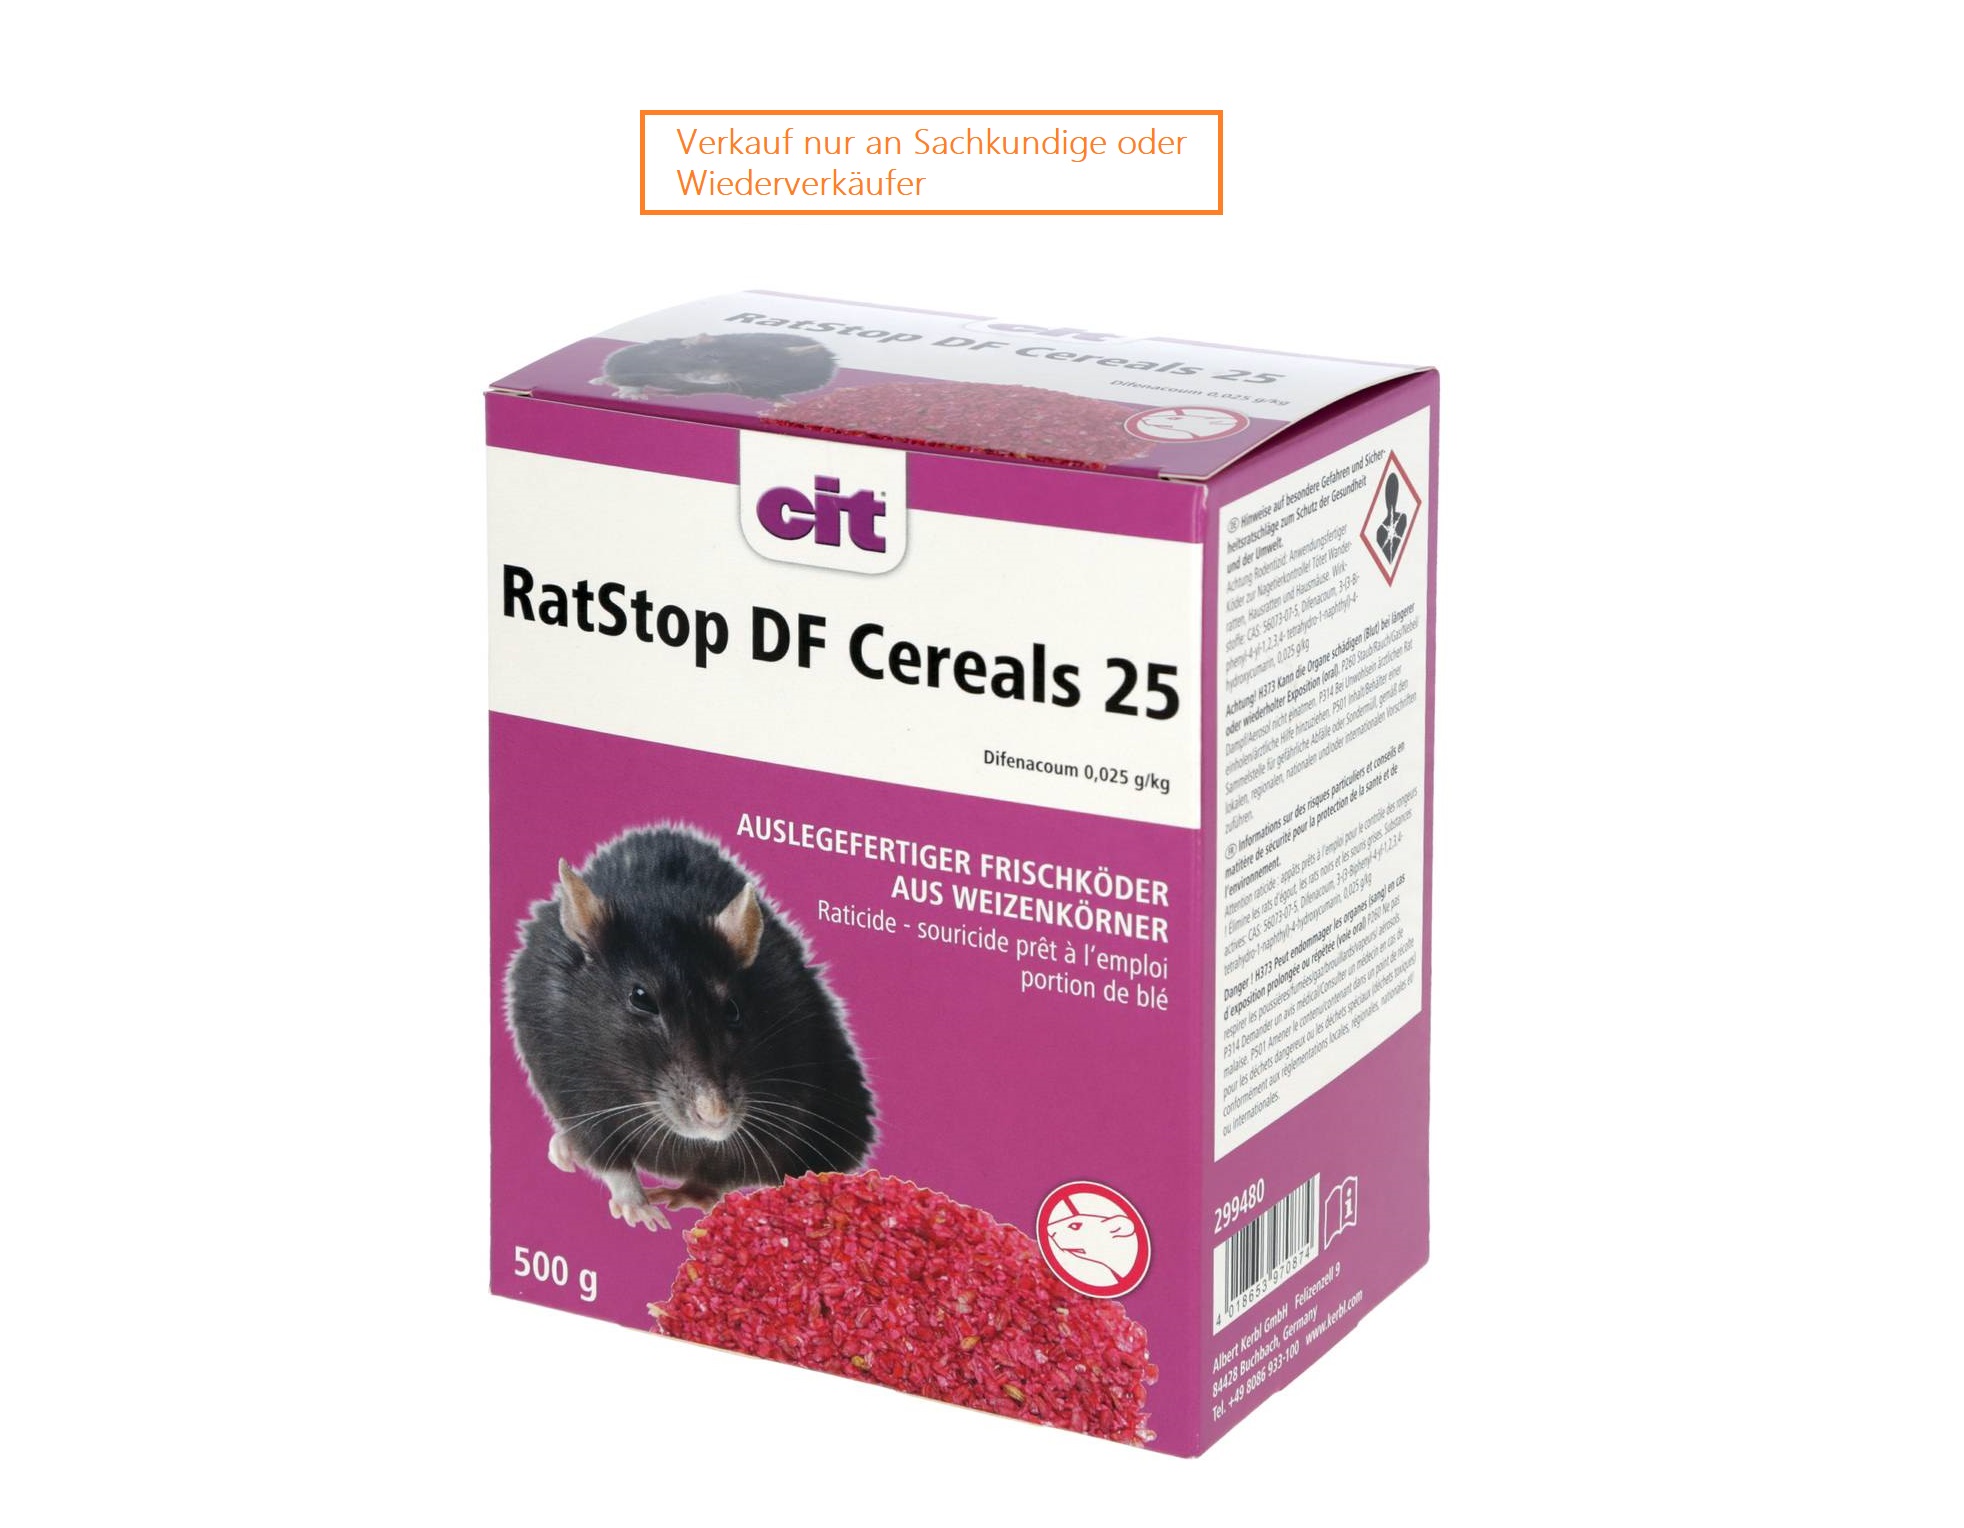 CIT RatStop DF Cereals 25, 500g